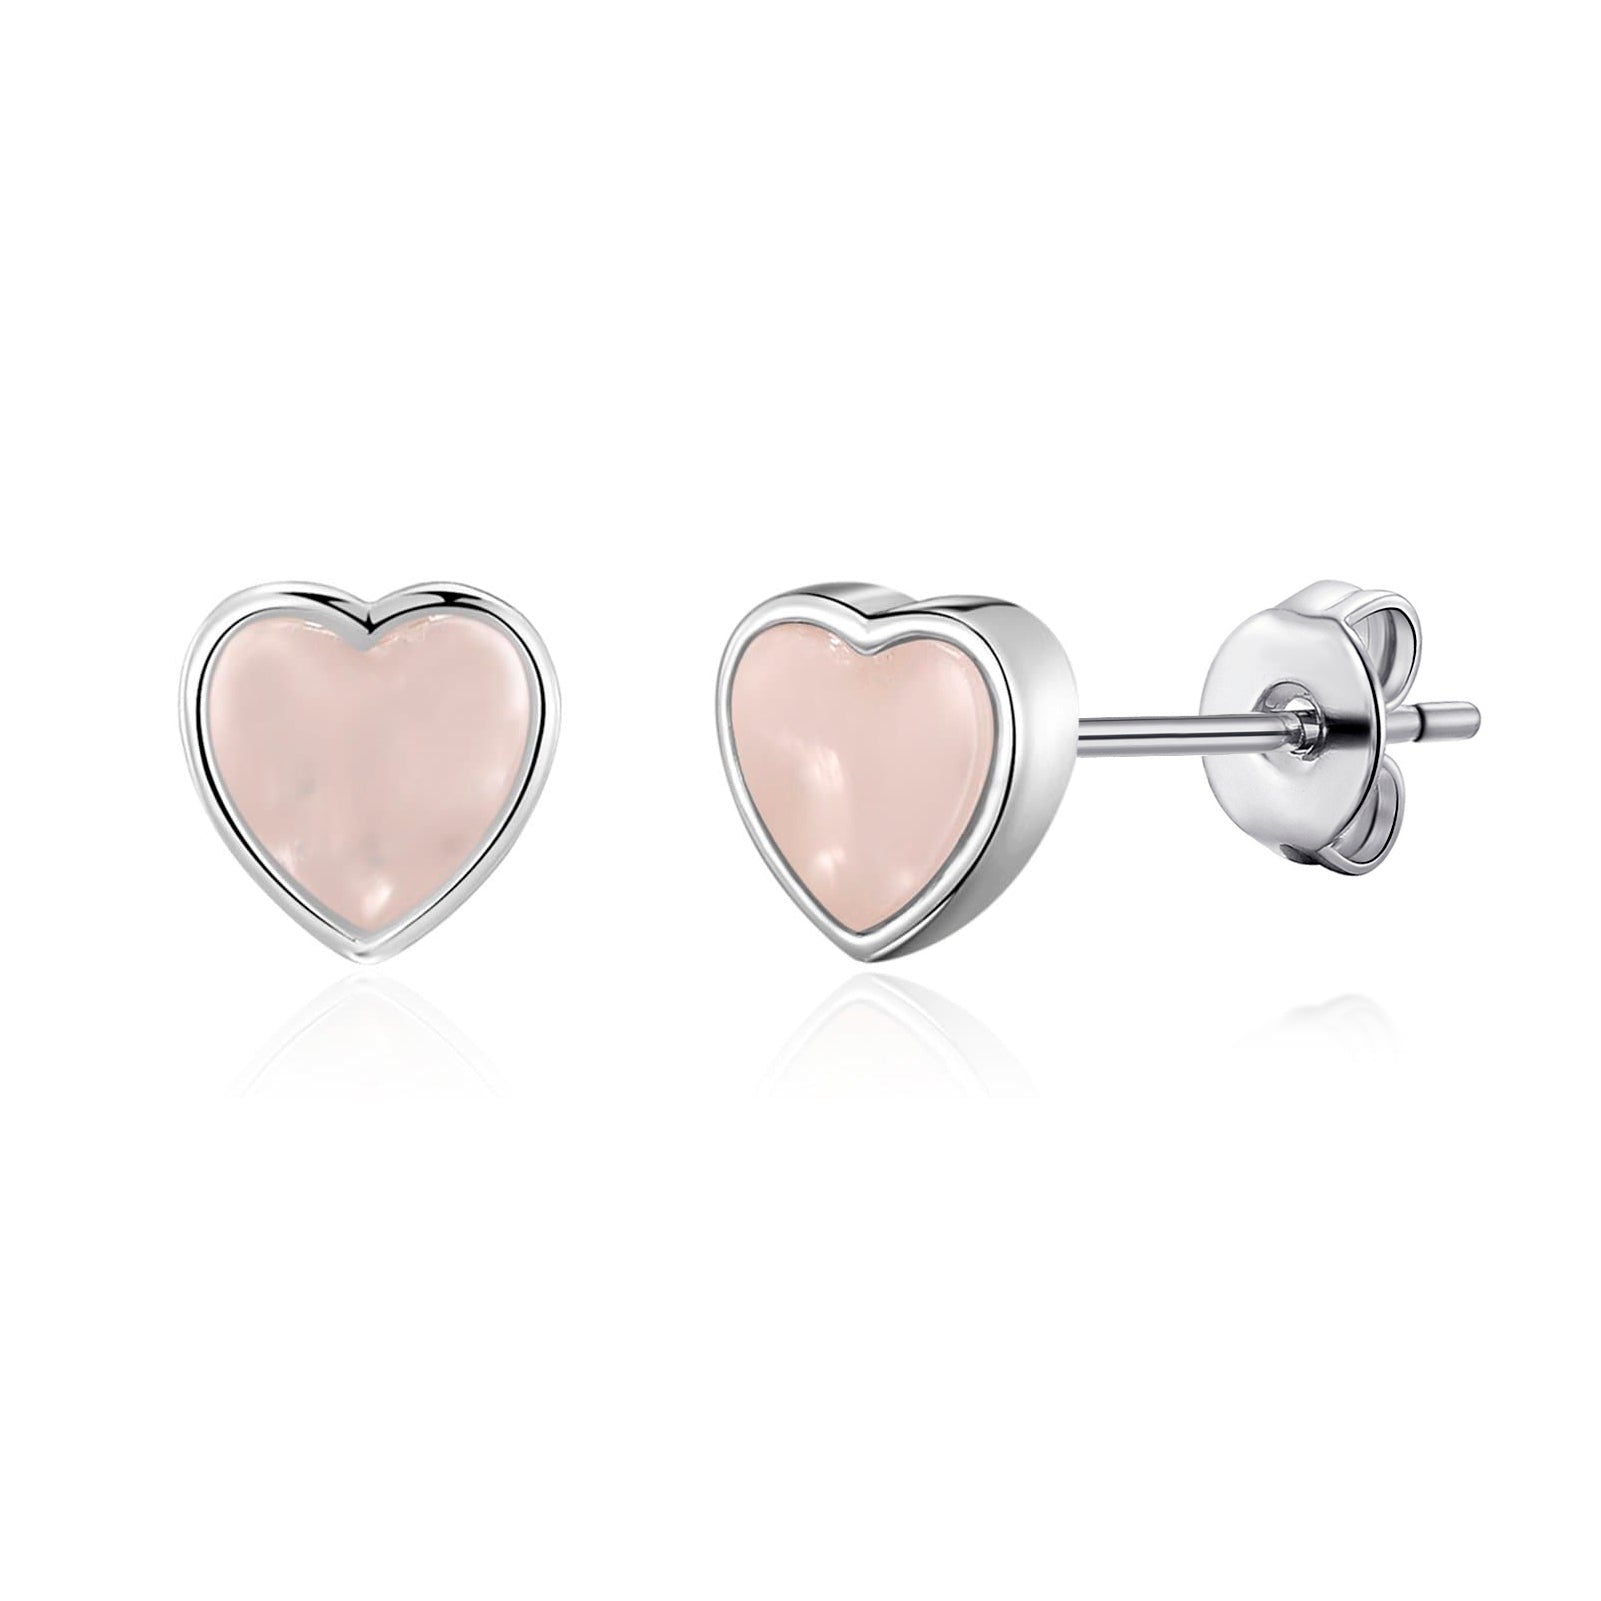 Rose Quartz Heart Stud Earrings